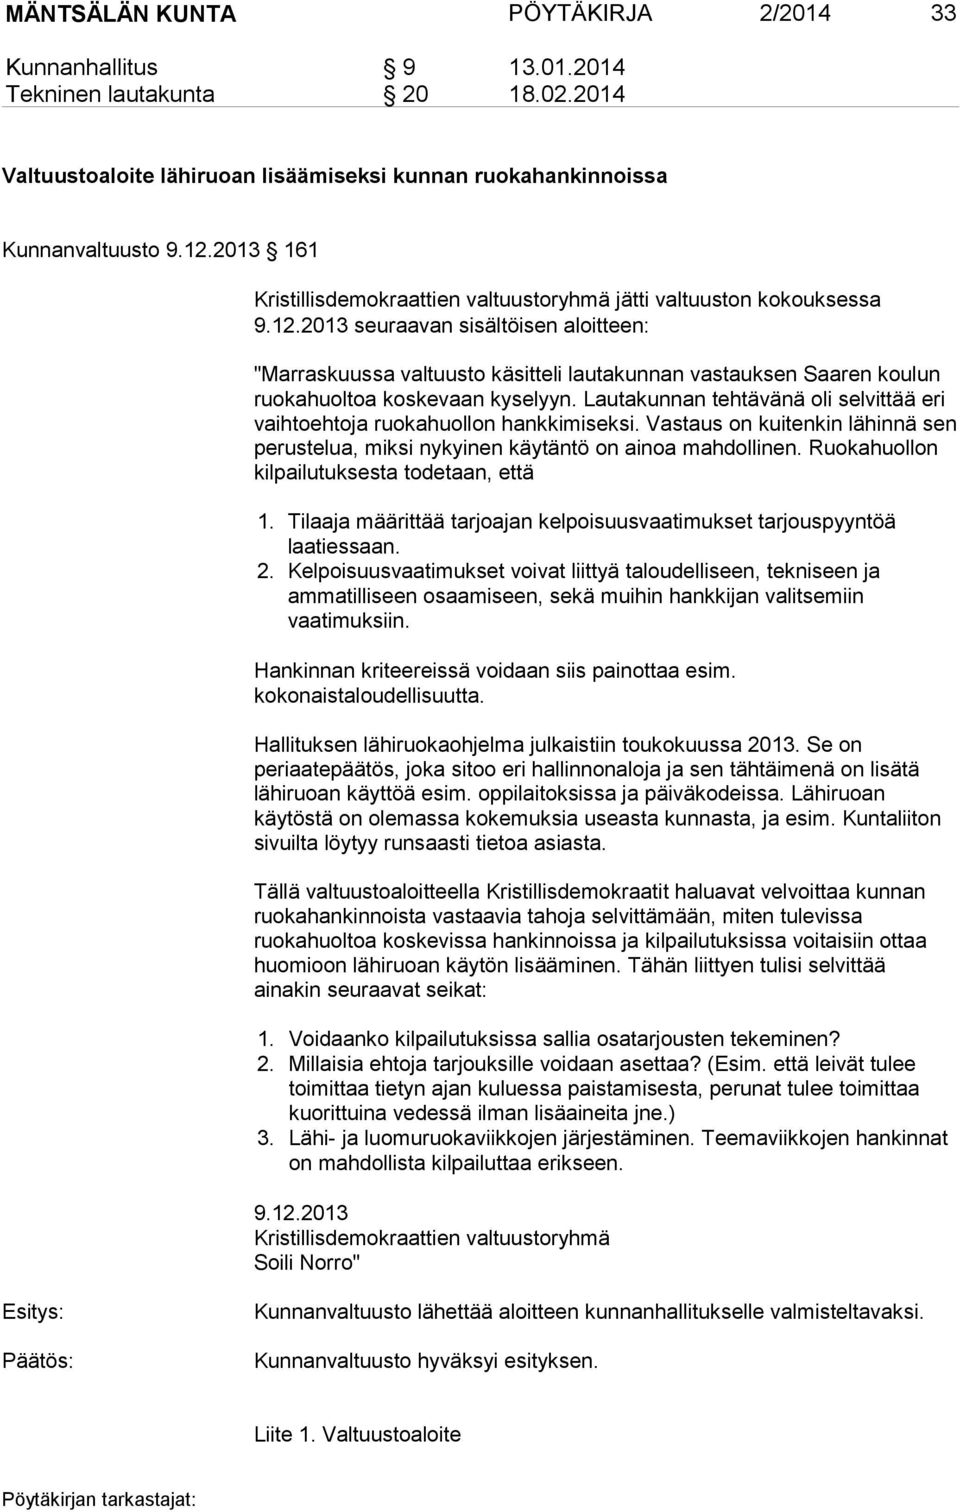 2013 seuraavan sisältöisen aloitteen: "Marraskuussa valtuusto käsitteli lautakunnan vastauksen Saaren koulun ruokahuoltoa koskevaan kyselyyn.